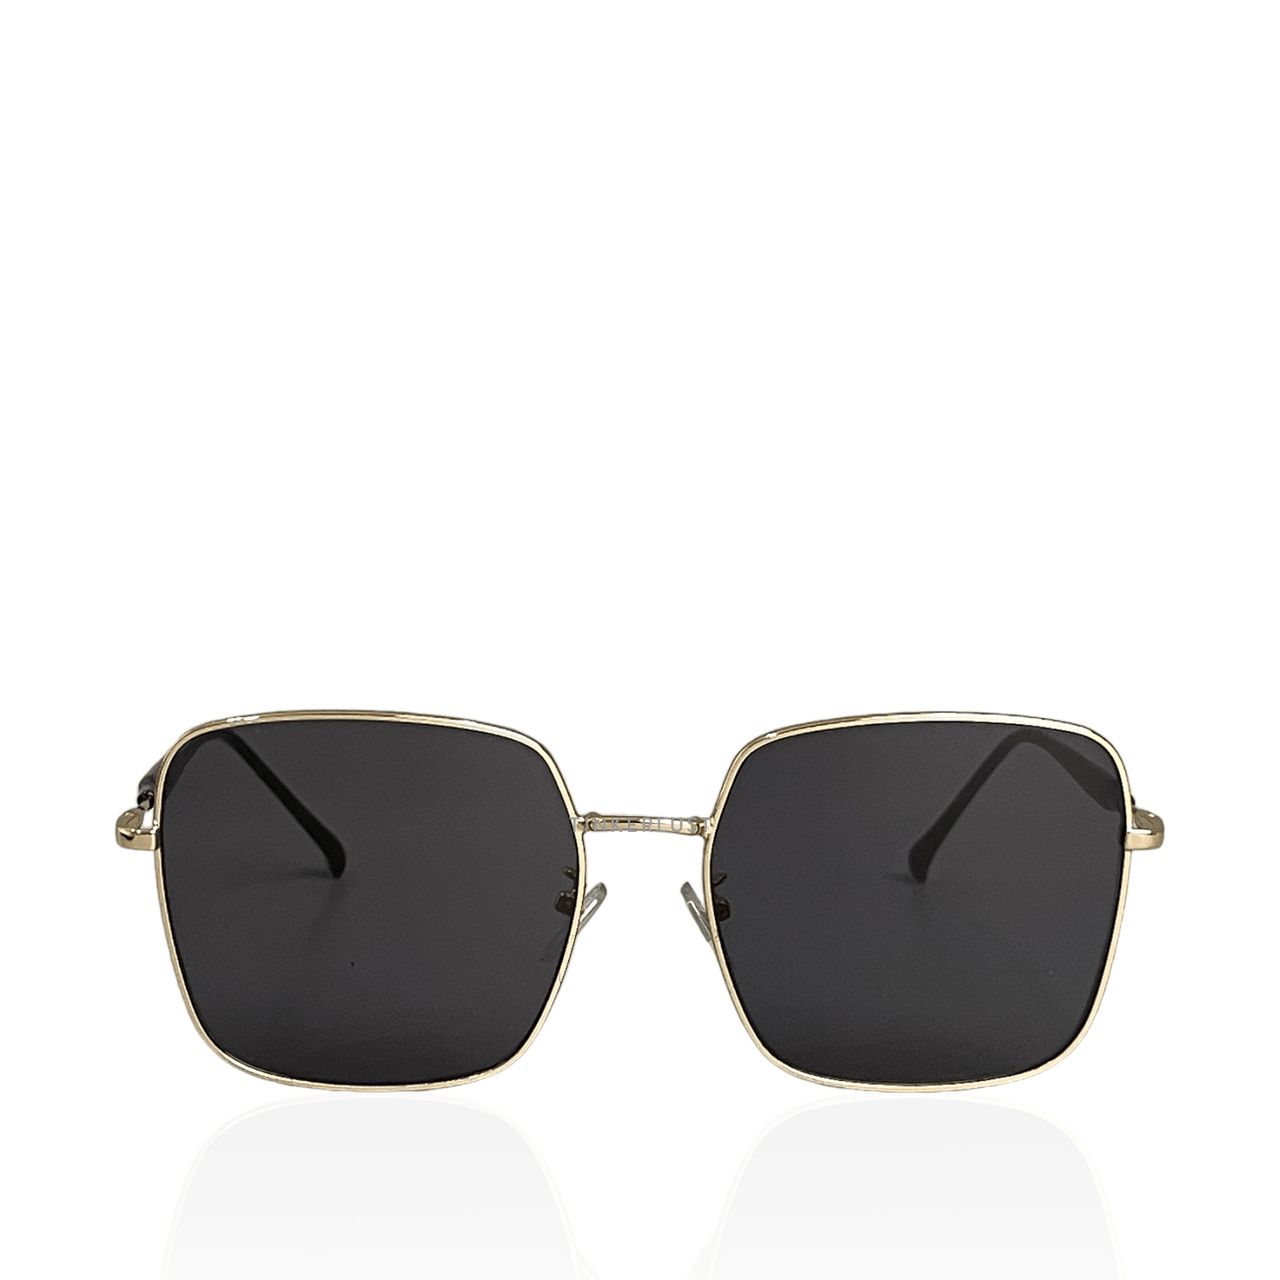 Private Collection Gold & Black Sunglasses